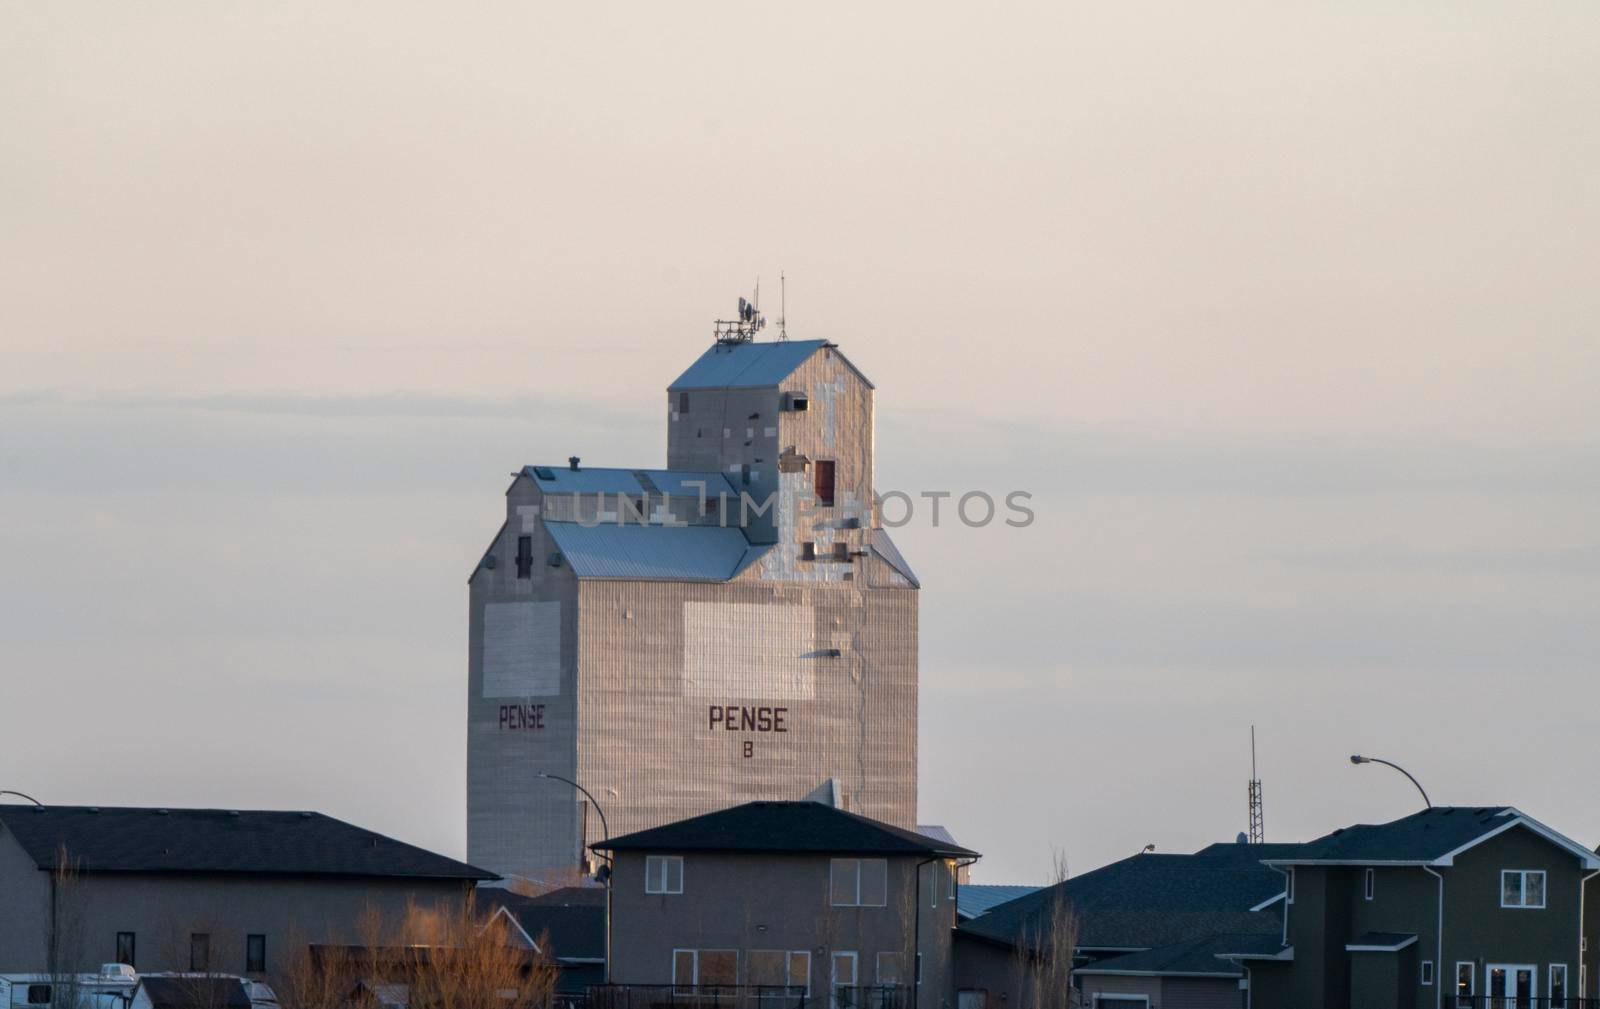 Grain Elevator Saskatchewan Pense near Regina Canada